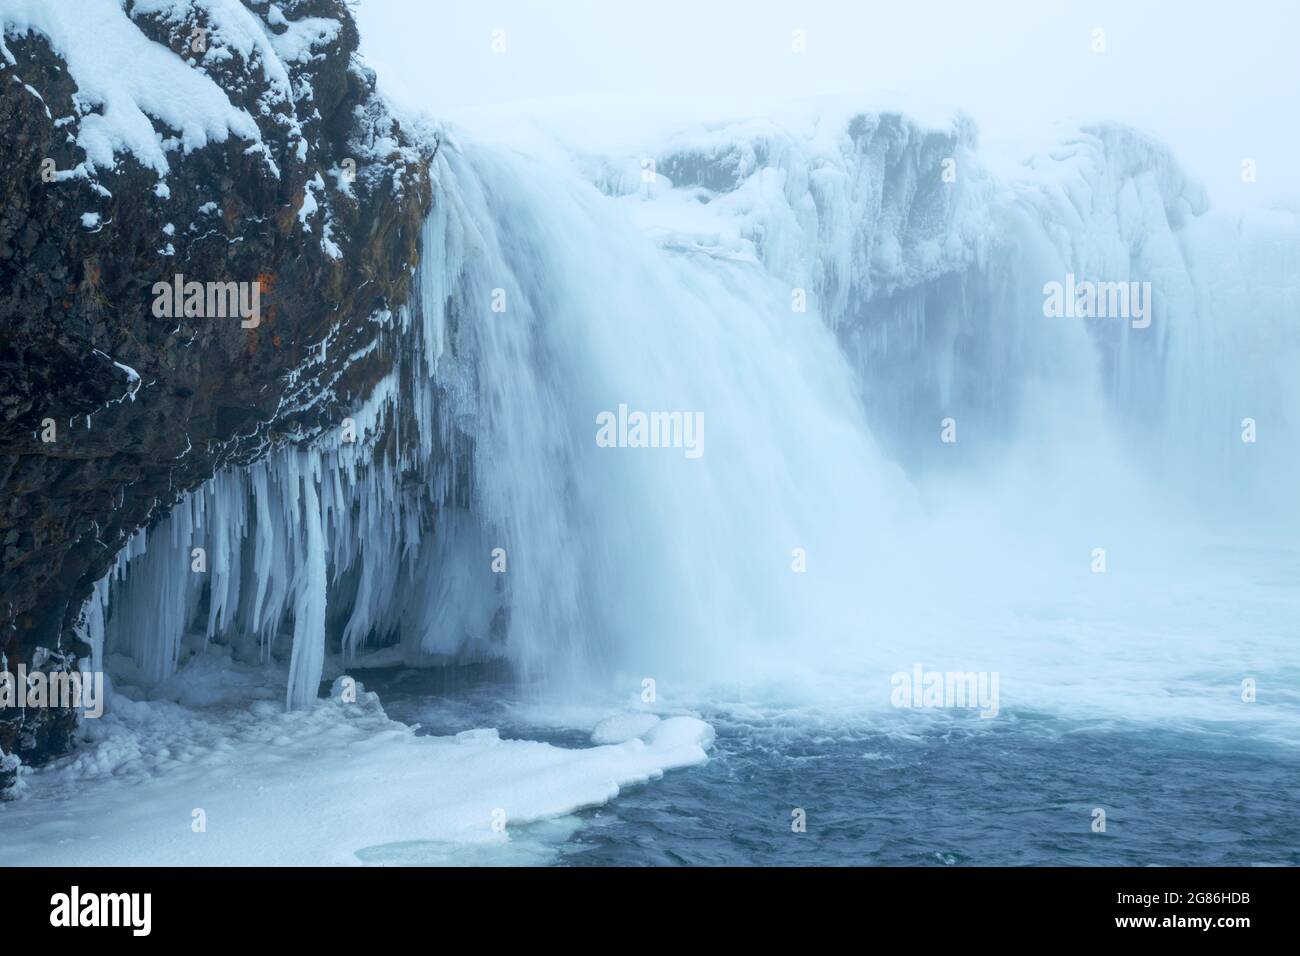 Goðafoss cascade complexe pendant les conditions hivernales montrant le 12 mètres Laissez-vous berer par les glaces de la rivière Skjálfandafljót Islande Banque D'Images